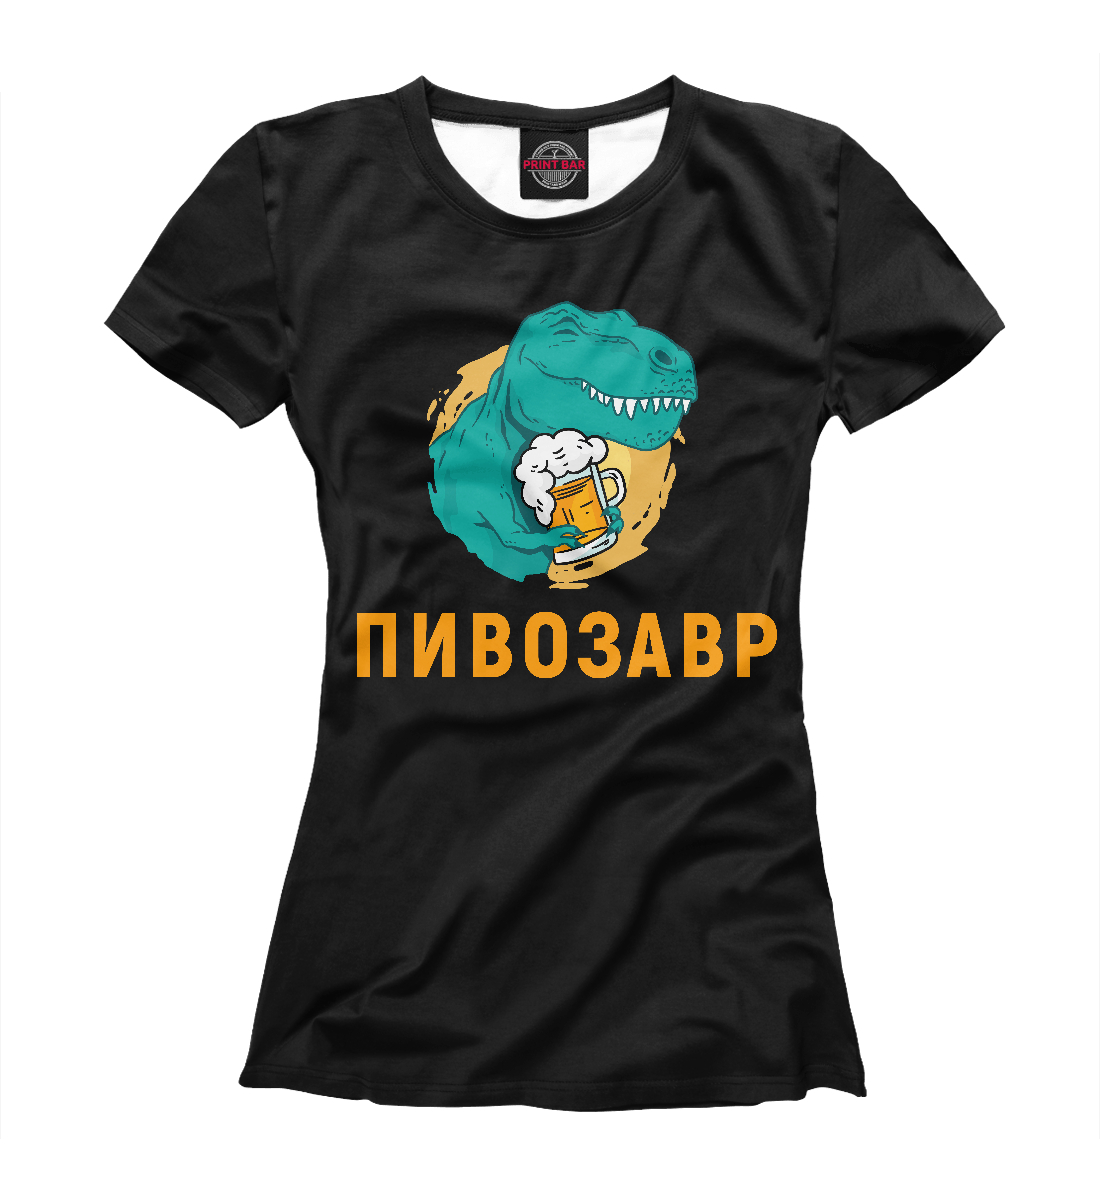 Футболка Пивозавр Black для женщин, артикул: PIV-462116-fut-1mp